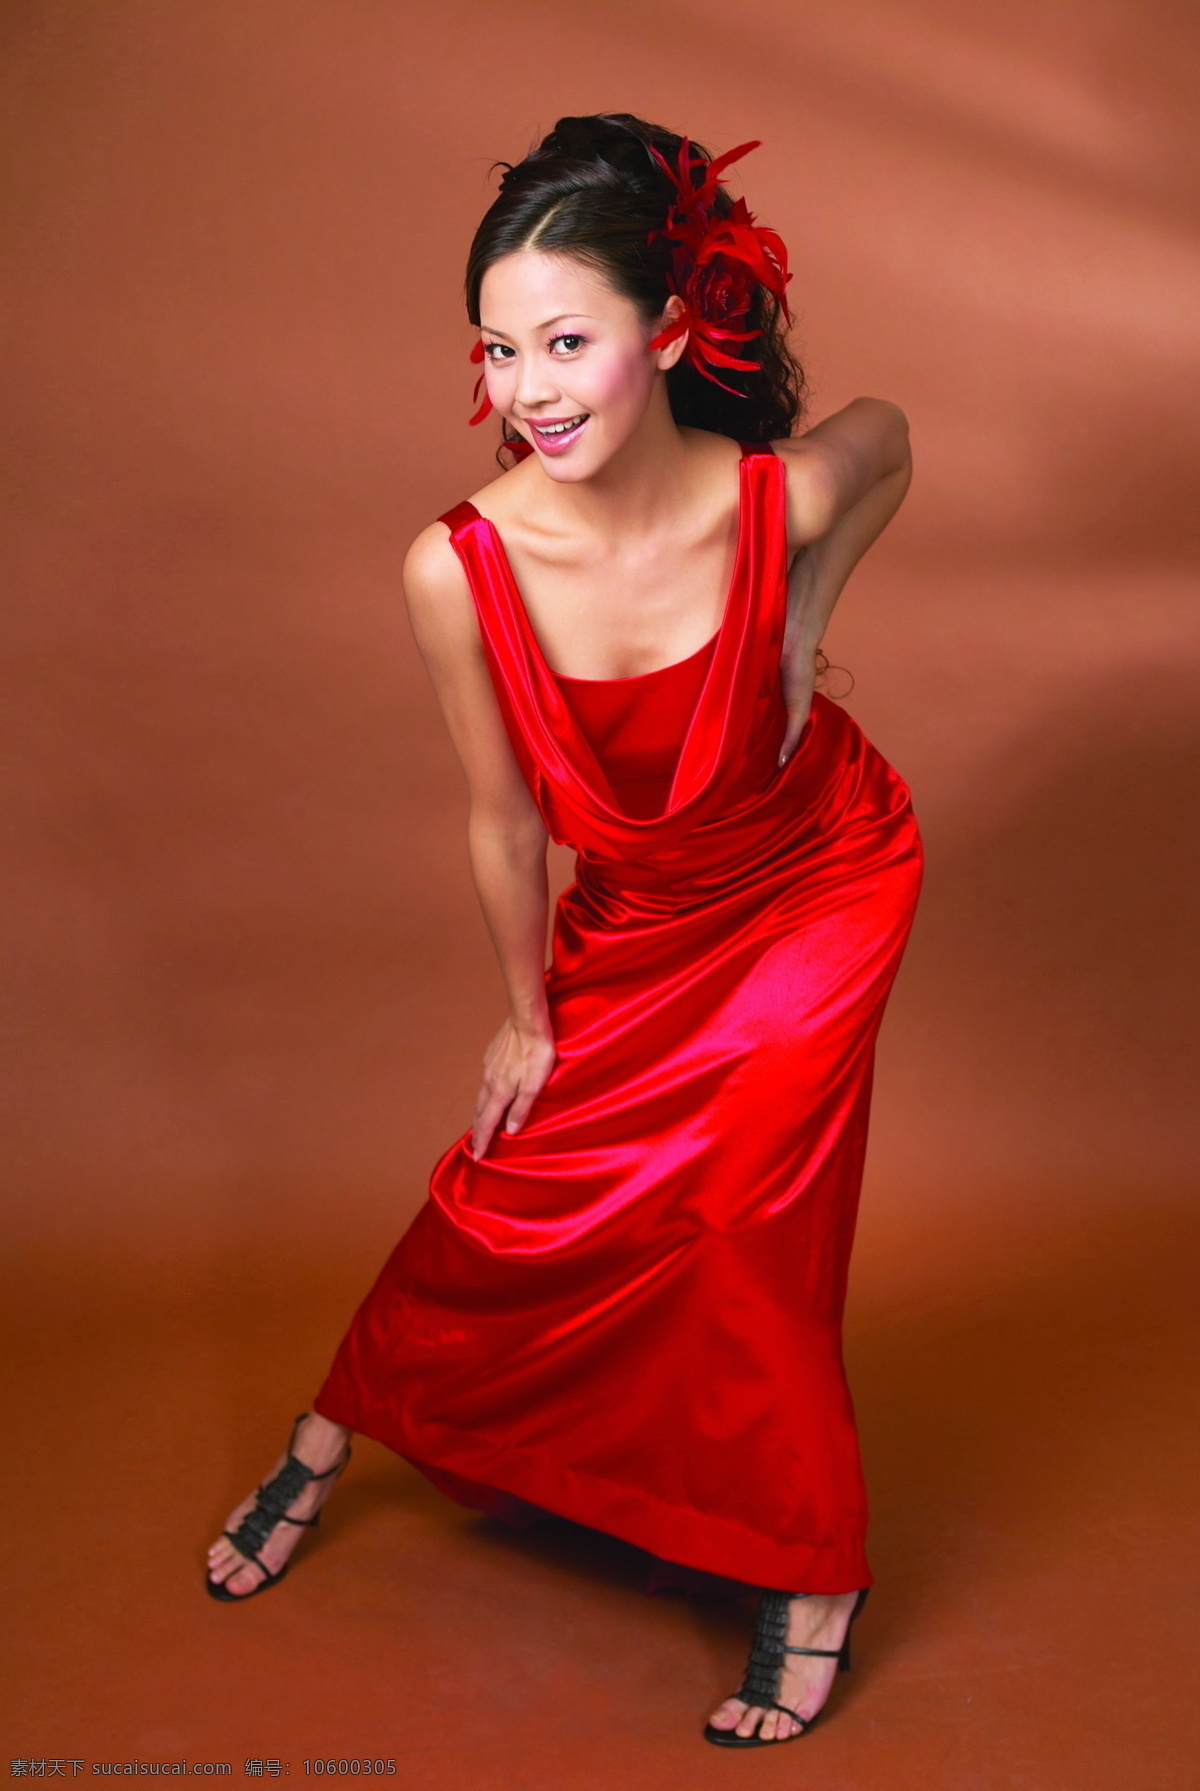 礼服 造型 人物图片 37 人物选型 各种造型 模特 姿势 亚洲女性 女人 人物图库 美女图片